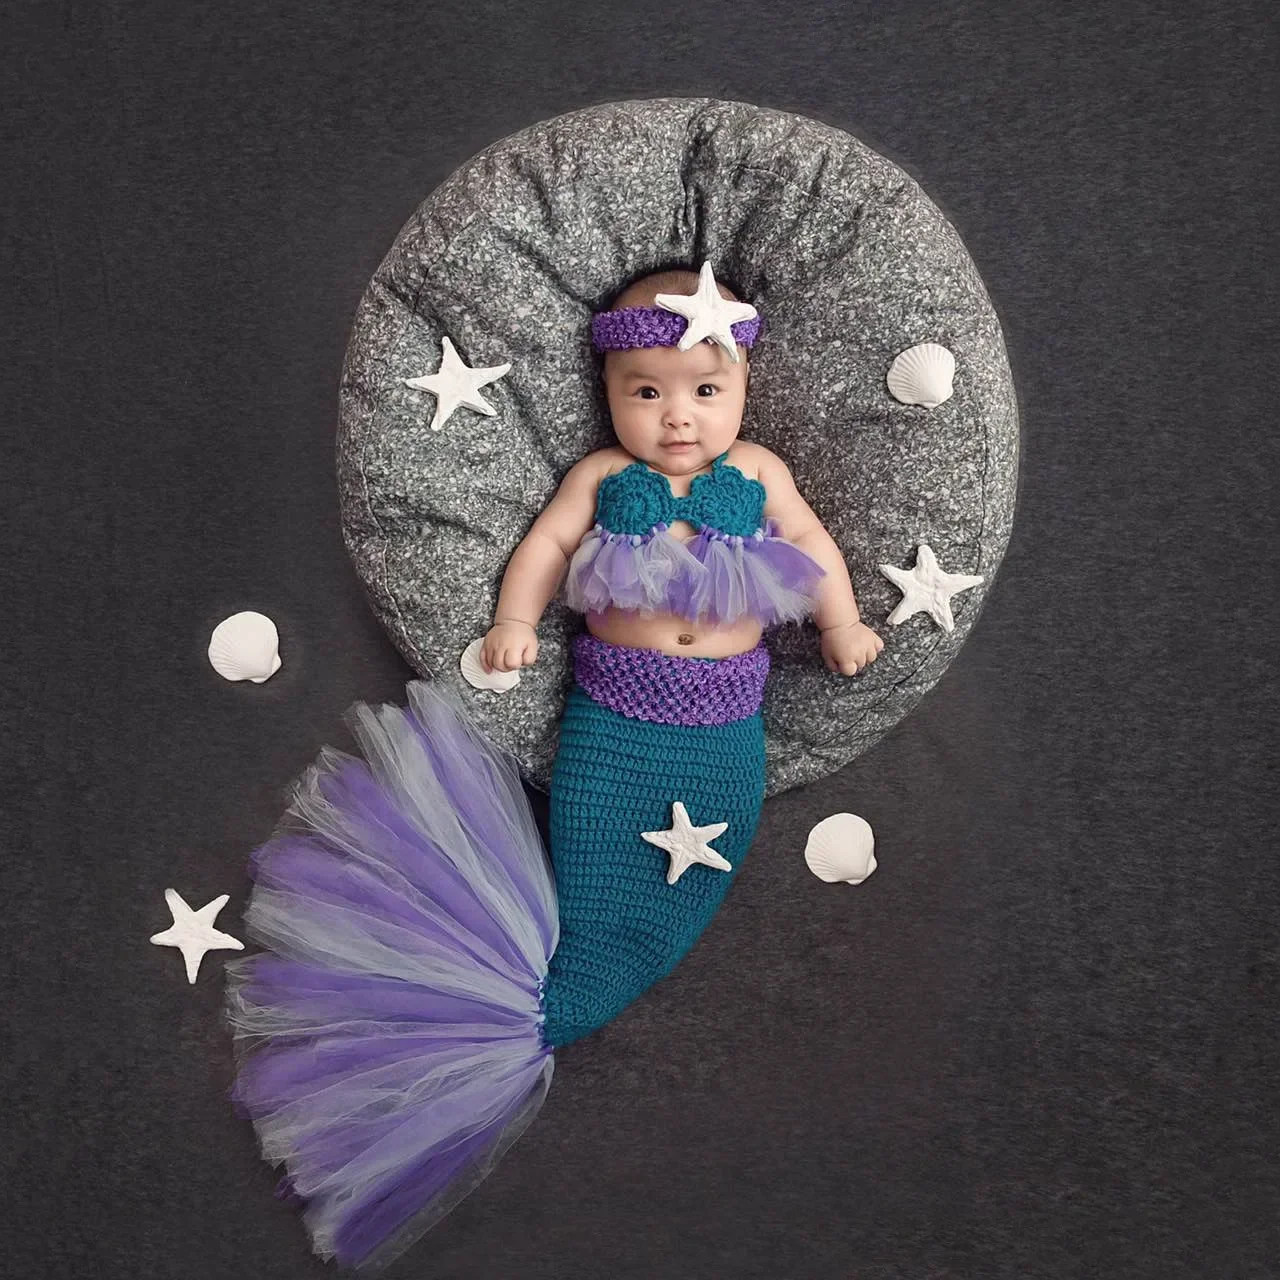 

Костюм Русалки для новорожденных, трикотажный фиолетовый костюм с юбкой годе, реквизит для фотосъемки